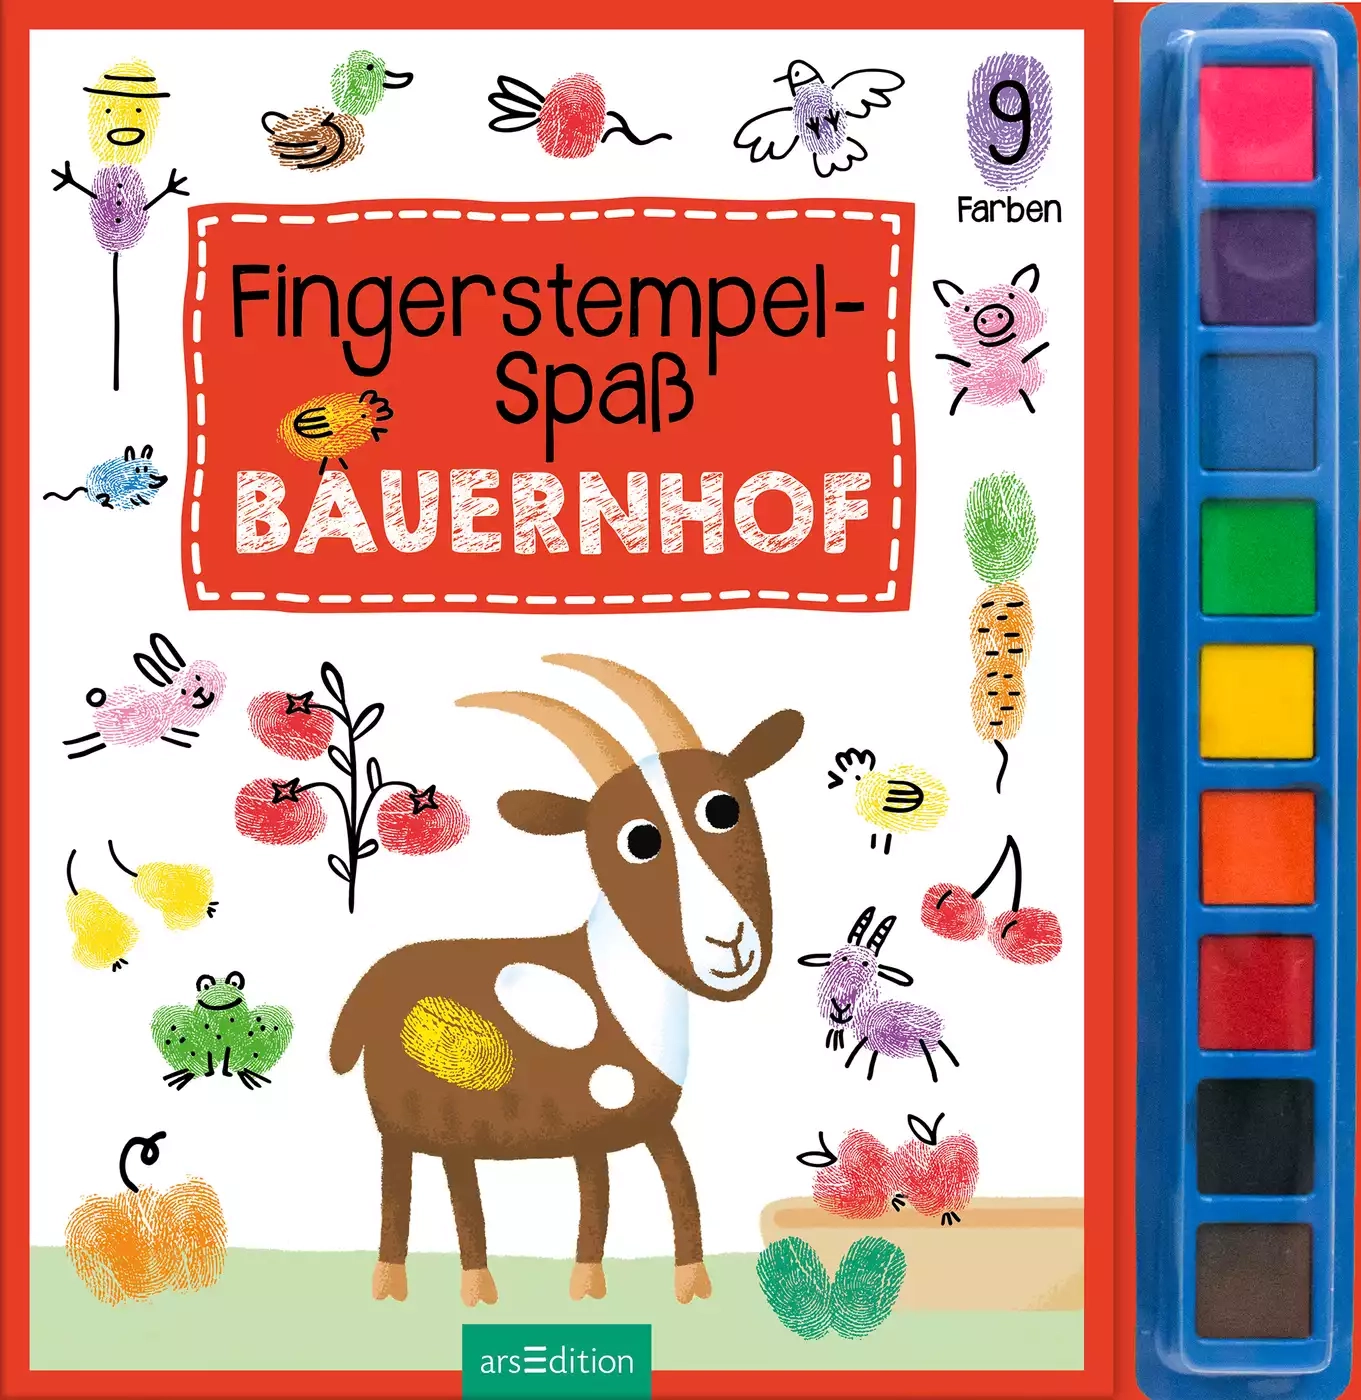 Fingerstempel-Spaß Bauernhof arsEdition 2000582213407 3